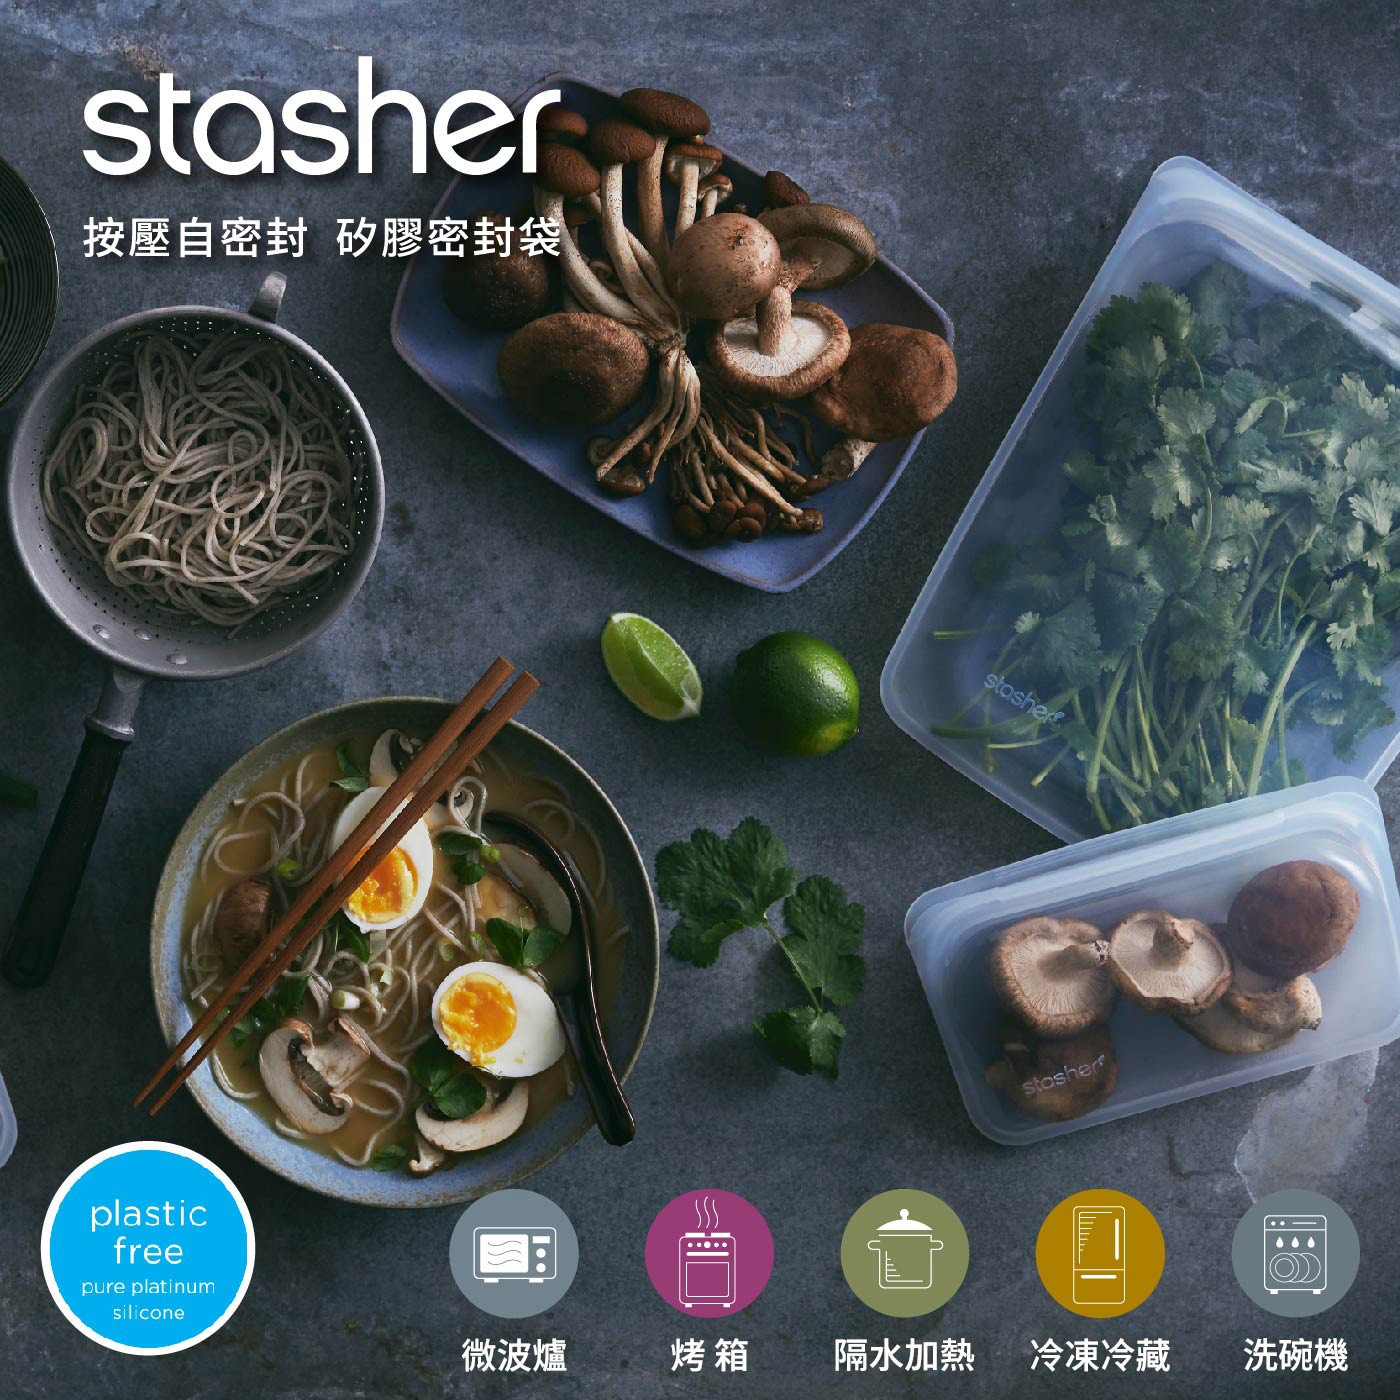 Stasher 迷你站站矽膠密封袋4件組，食品級矽膠材質的密封袋，無塑料，輕鬆按壓即可封口，冷凍保存食物、微波或隔水加熱、舒肥料理好好用，可重複使用。 